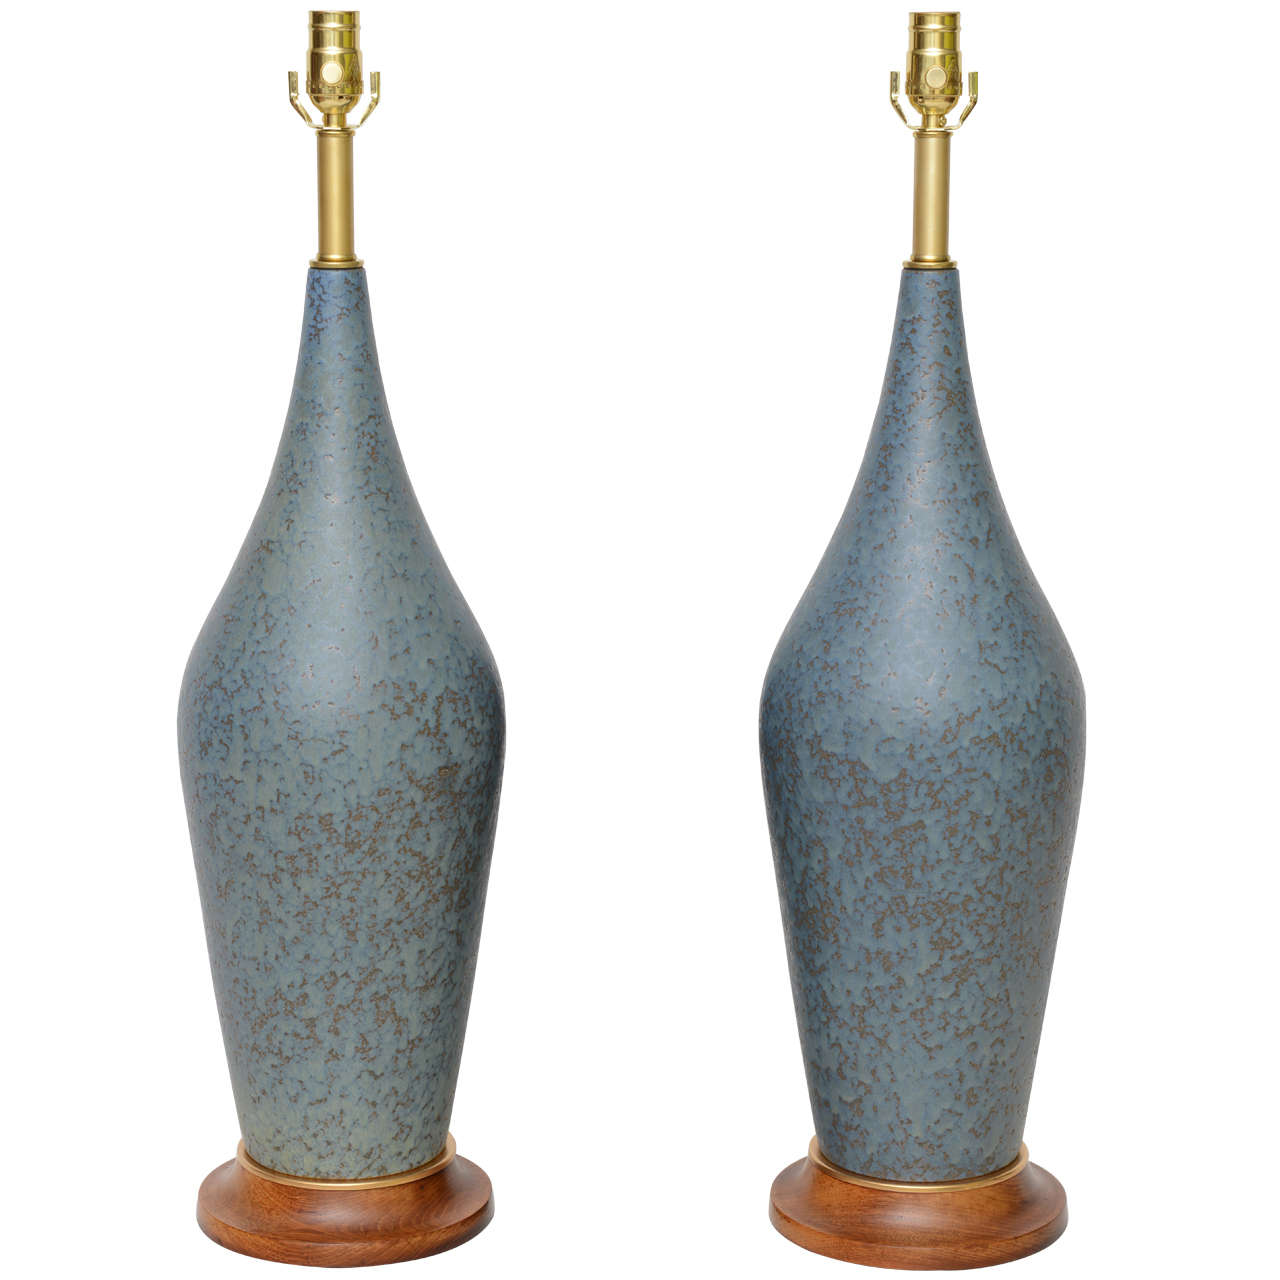 Fine Tall Mottled Drip Glaze Teardrop Pottery Table Lamps